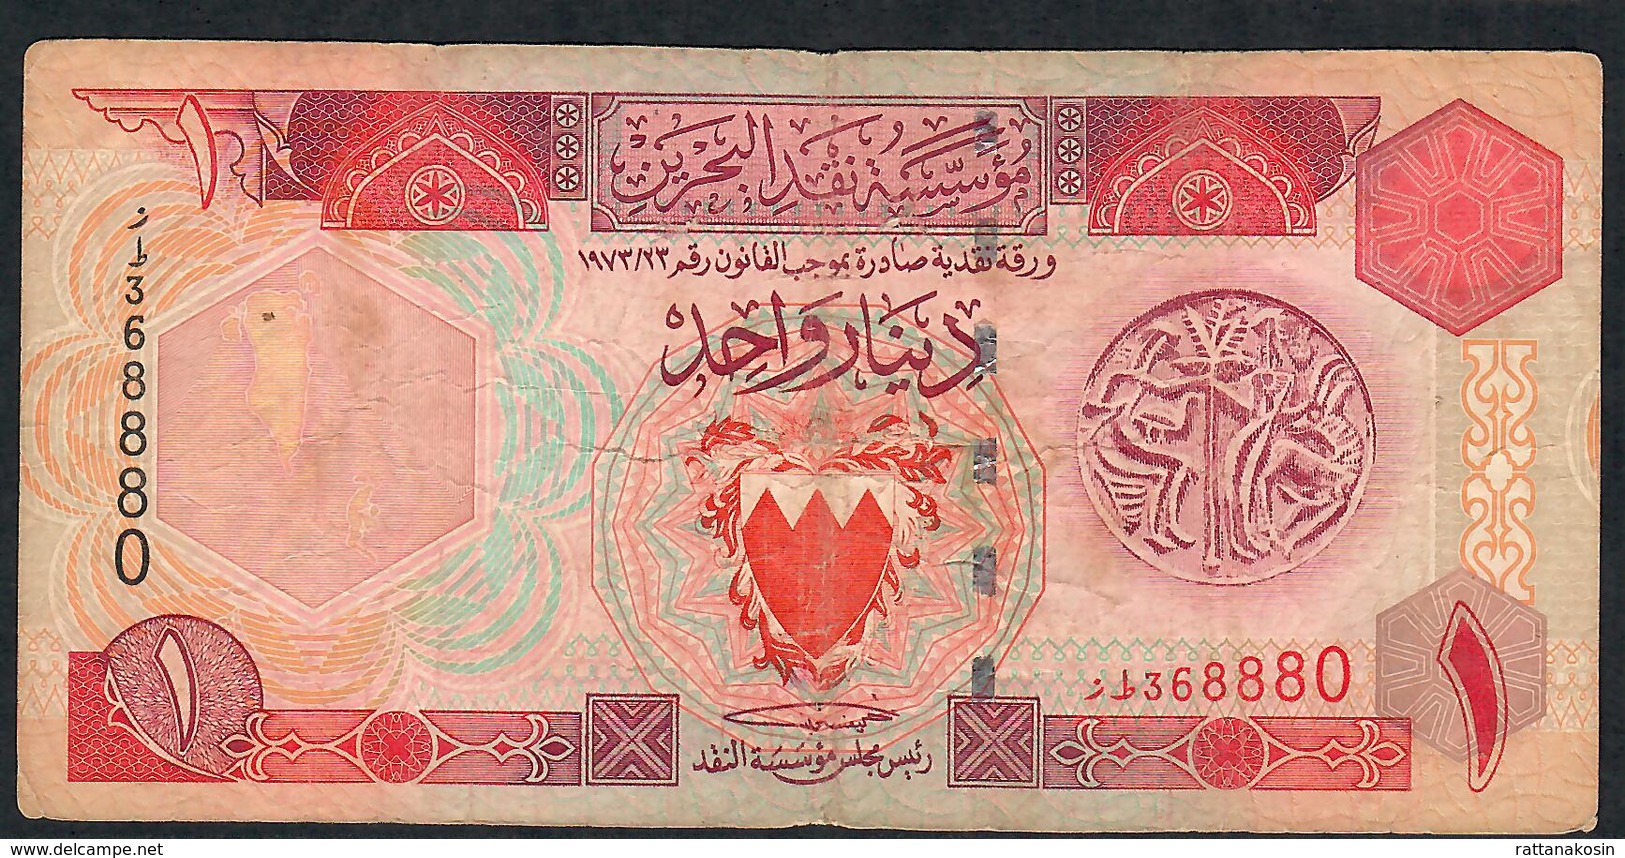 BAHRAIN P19b 1 DINAR 1973. FINE NO P.h. - Bahrein